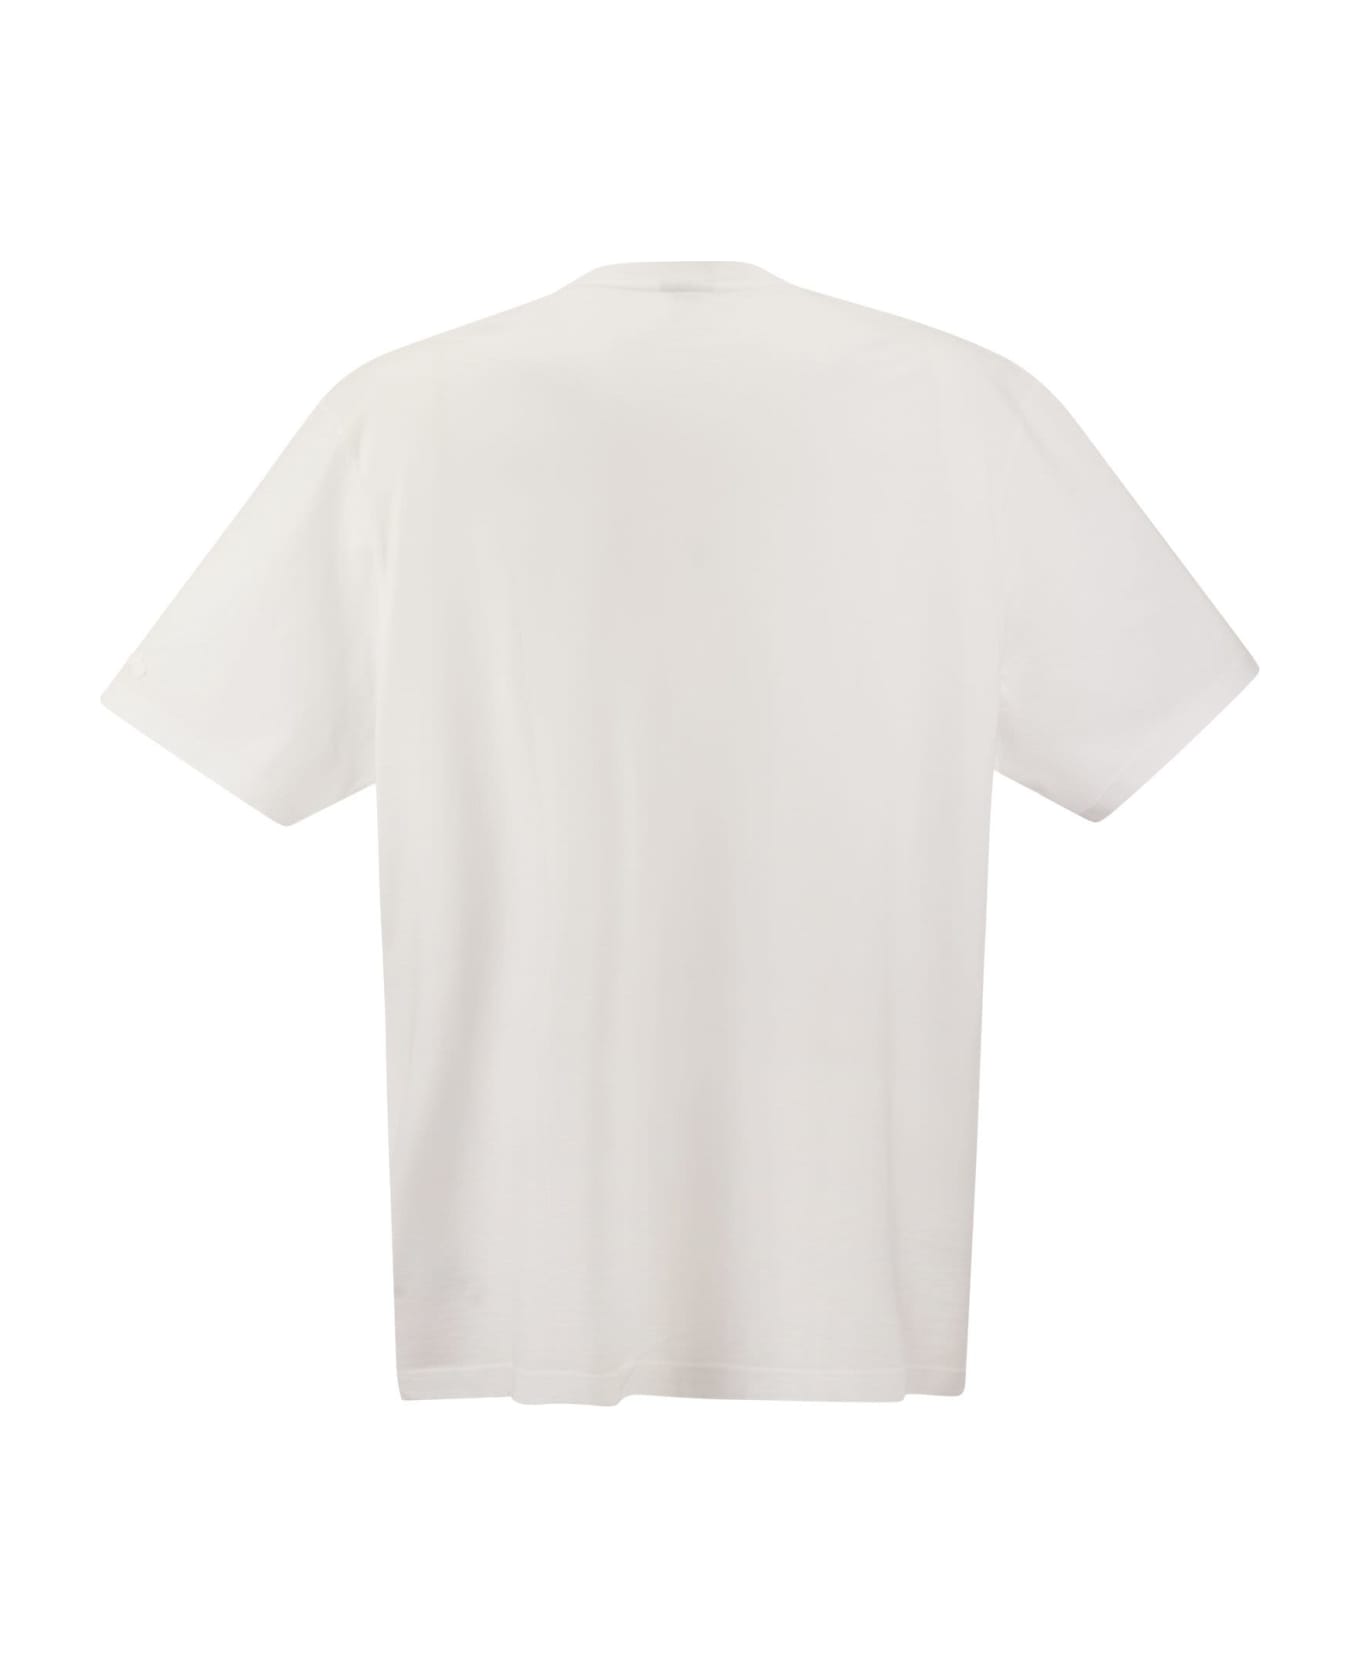 Paul&Shark Garment Dyed Cotton Jersey T-shirt